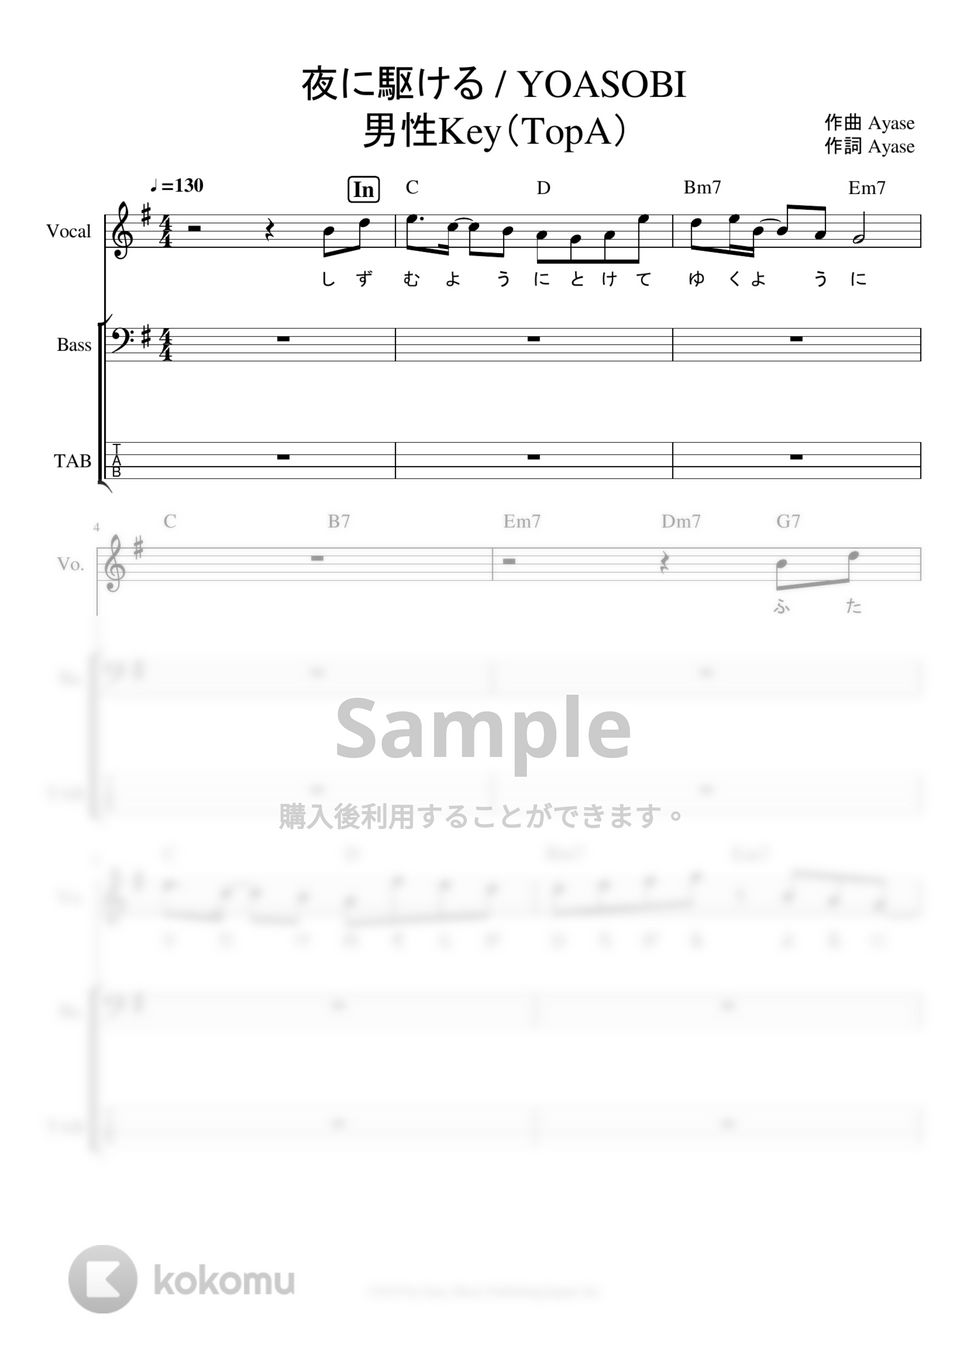 YOASOBI - 夜に駆ける　ベースタブ譜※男声アレンジ (男声キーに編曲したベースタブ譜です。) by ましまし